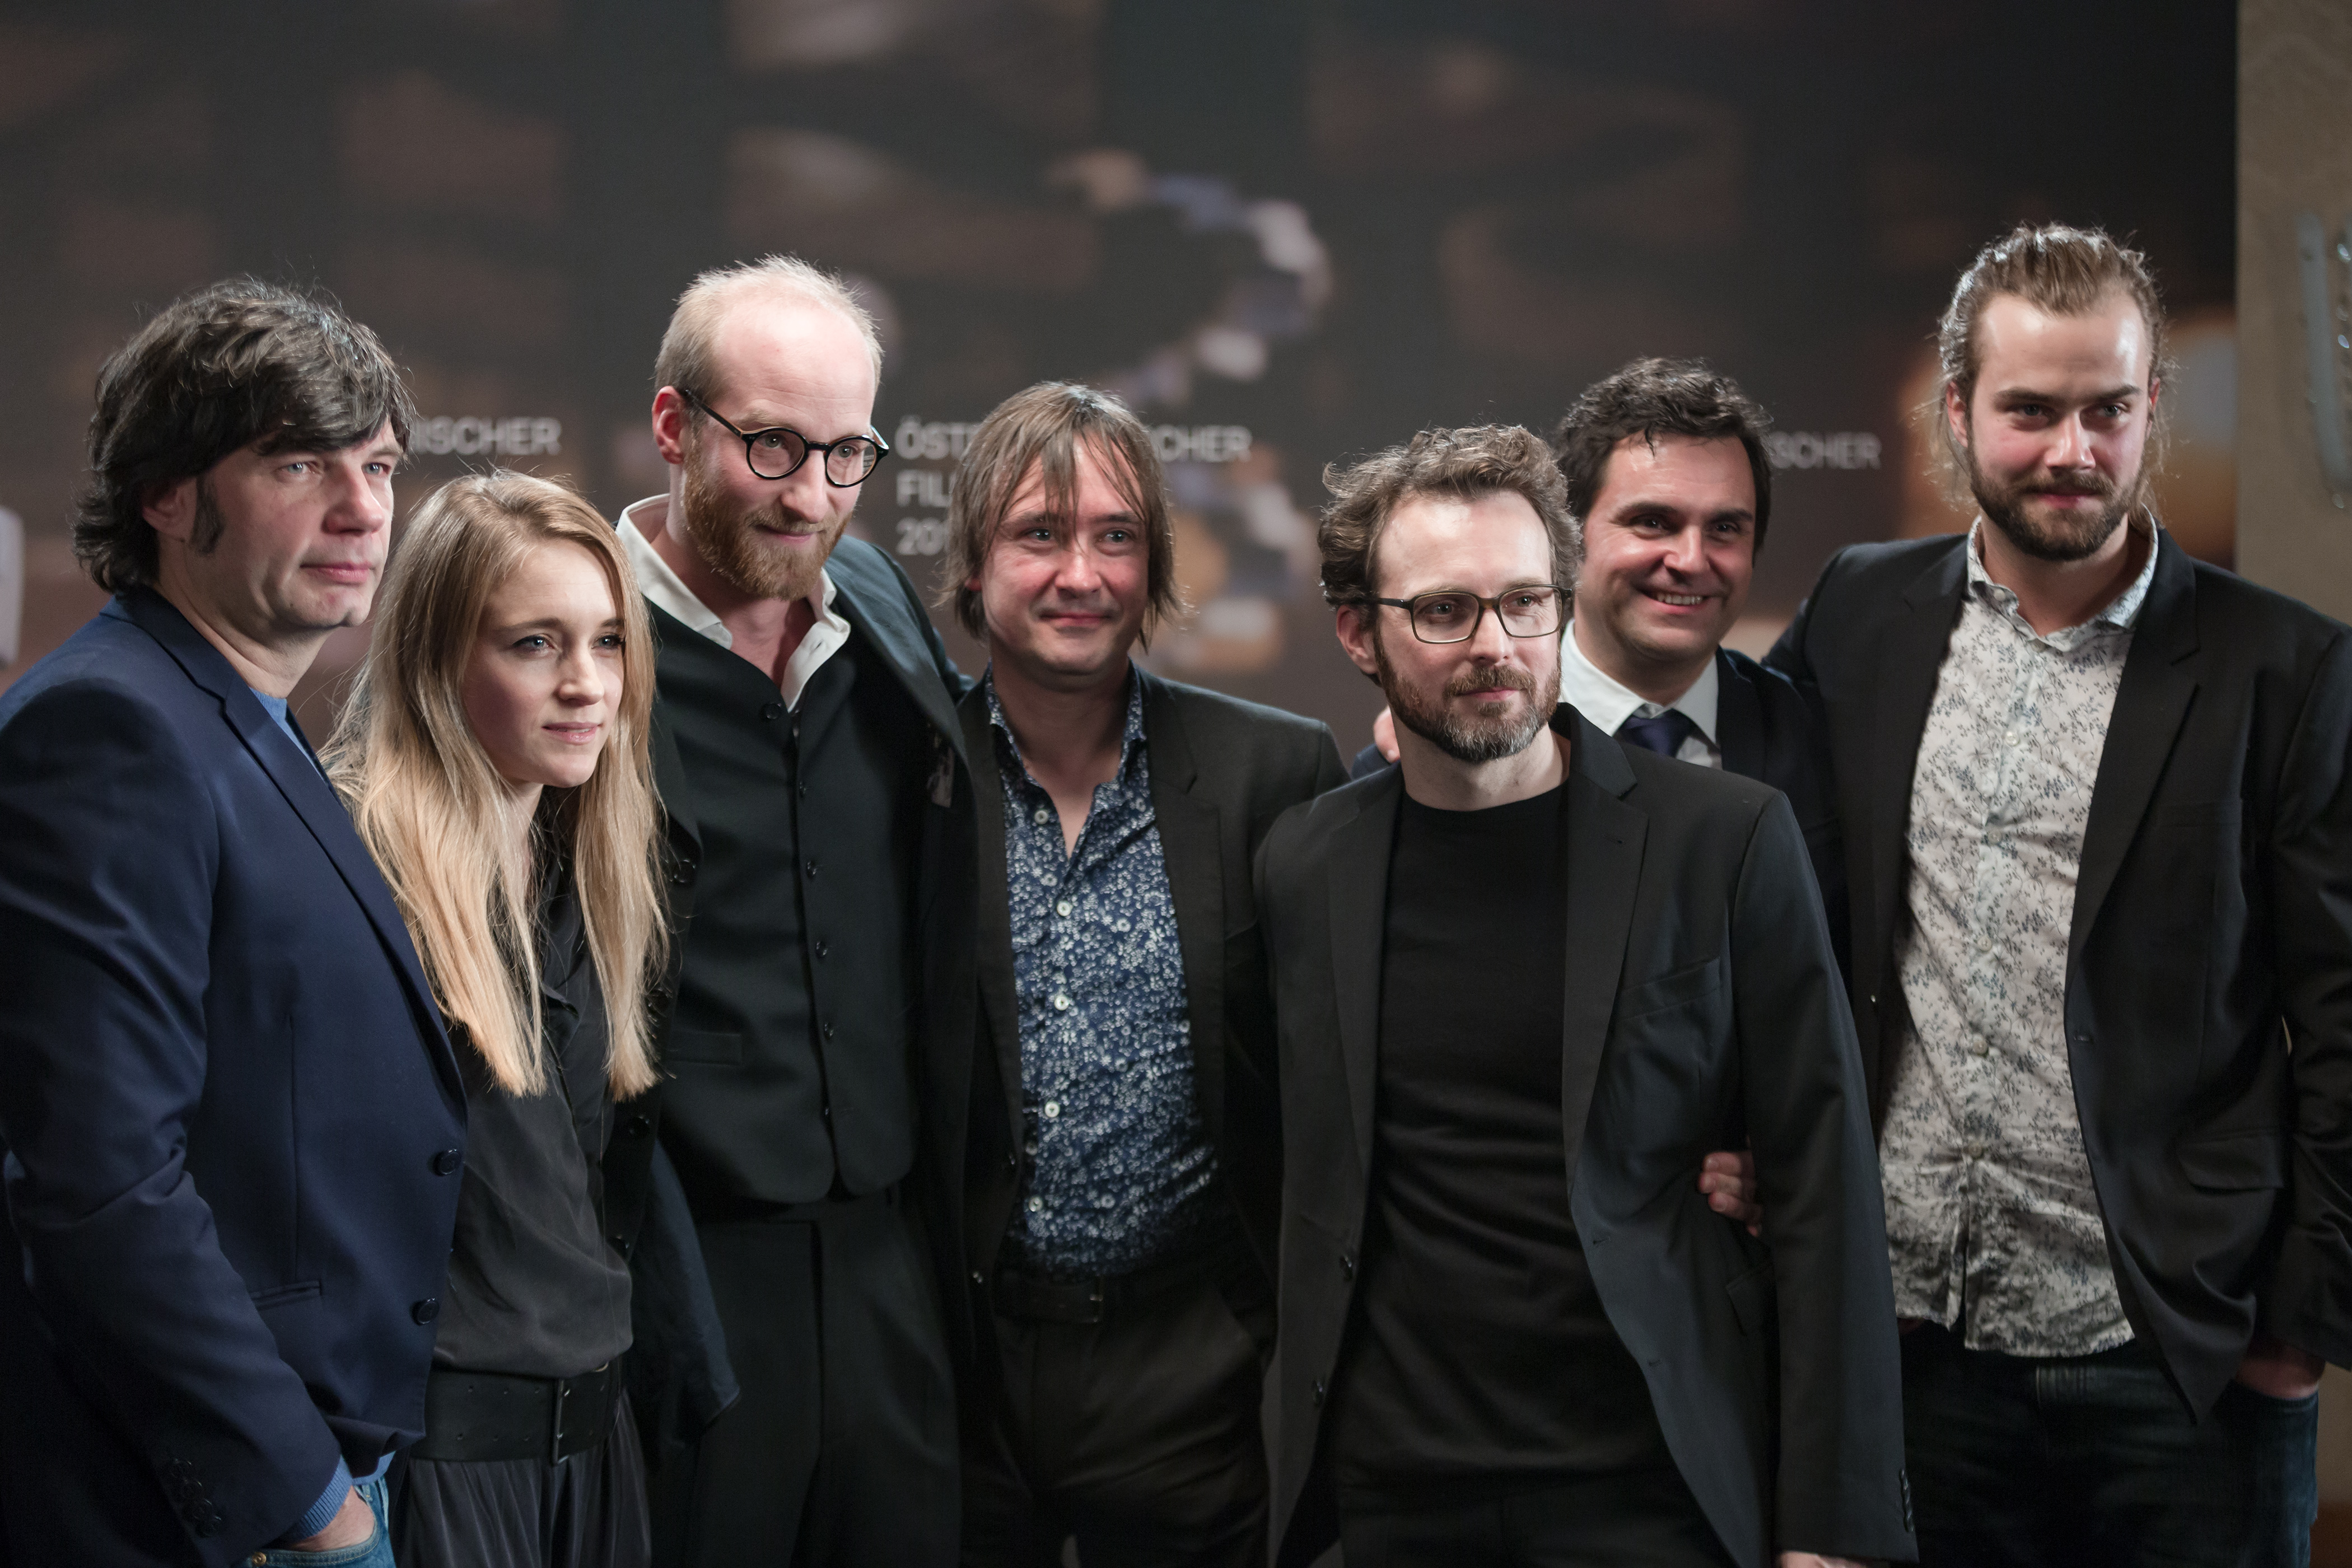 Österreichischer Filmpreis 2017 photo call Kater team 2